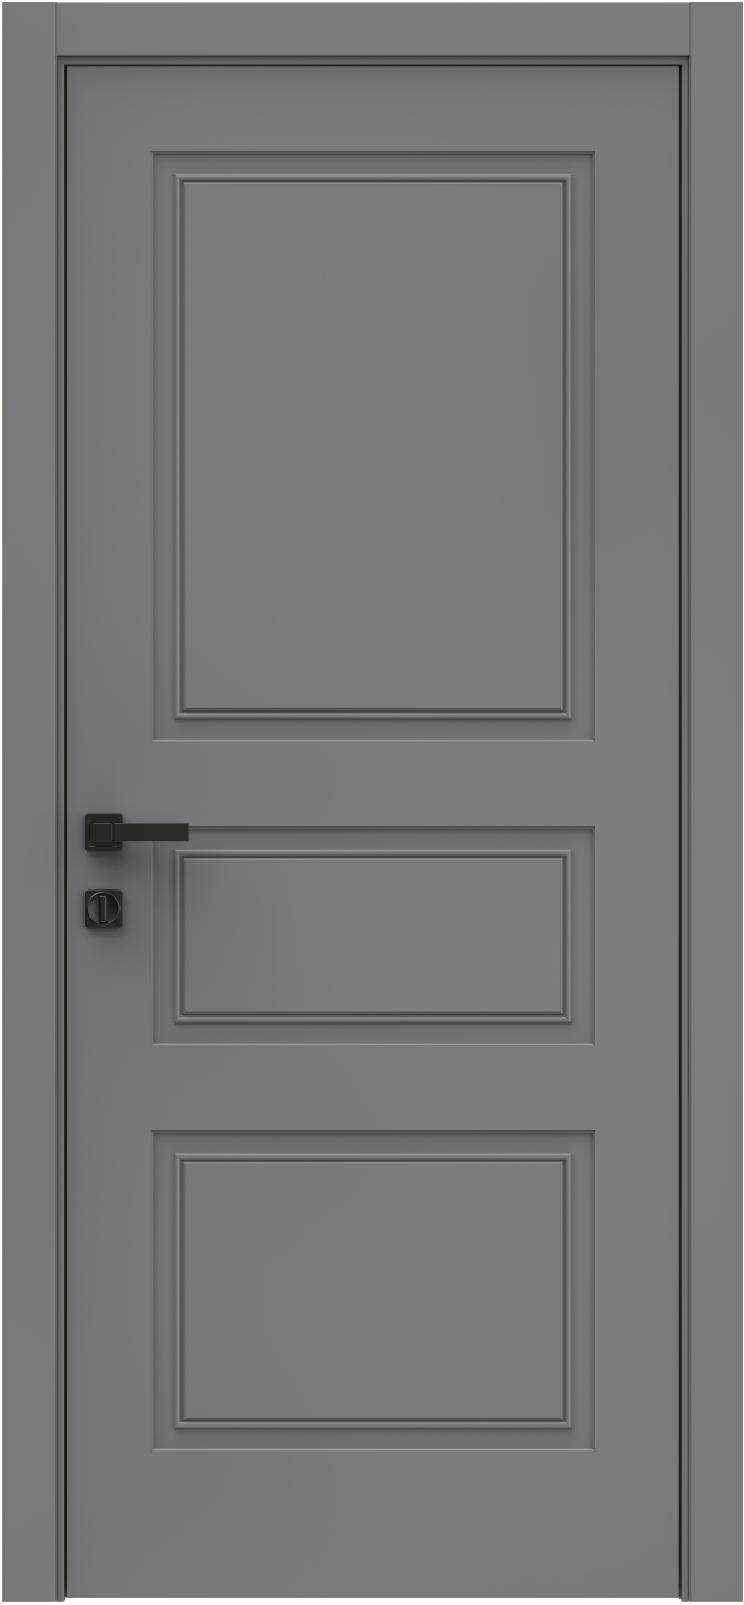 Questdoors Межкомнатная дверь QES3, арт. 26318 - фото №1